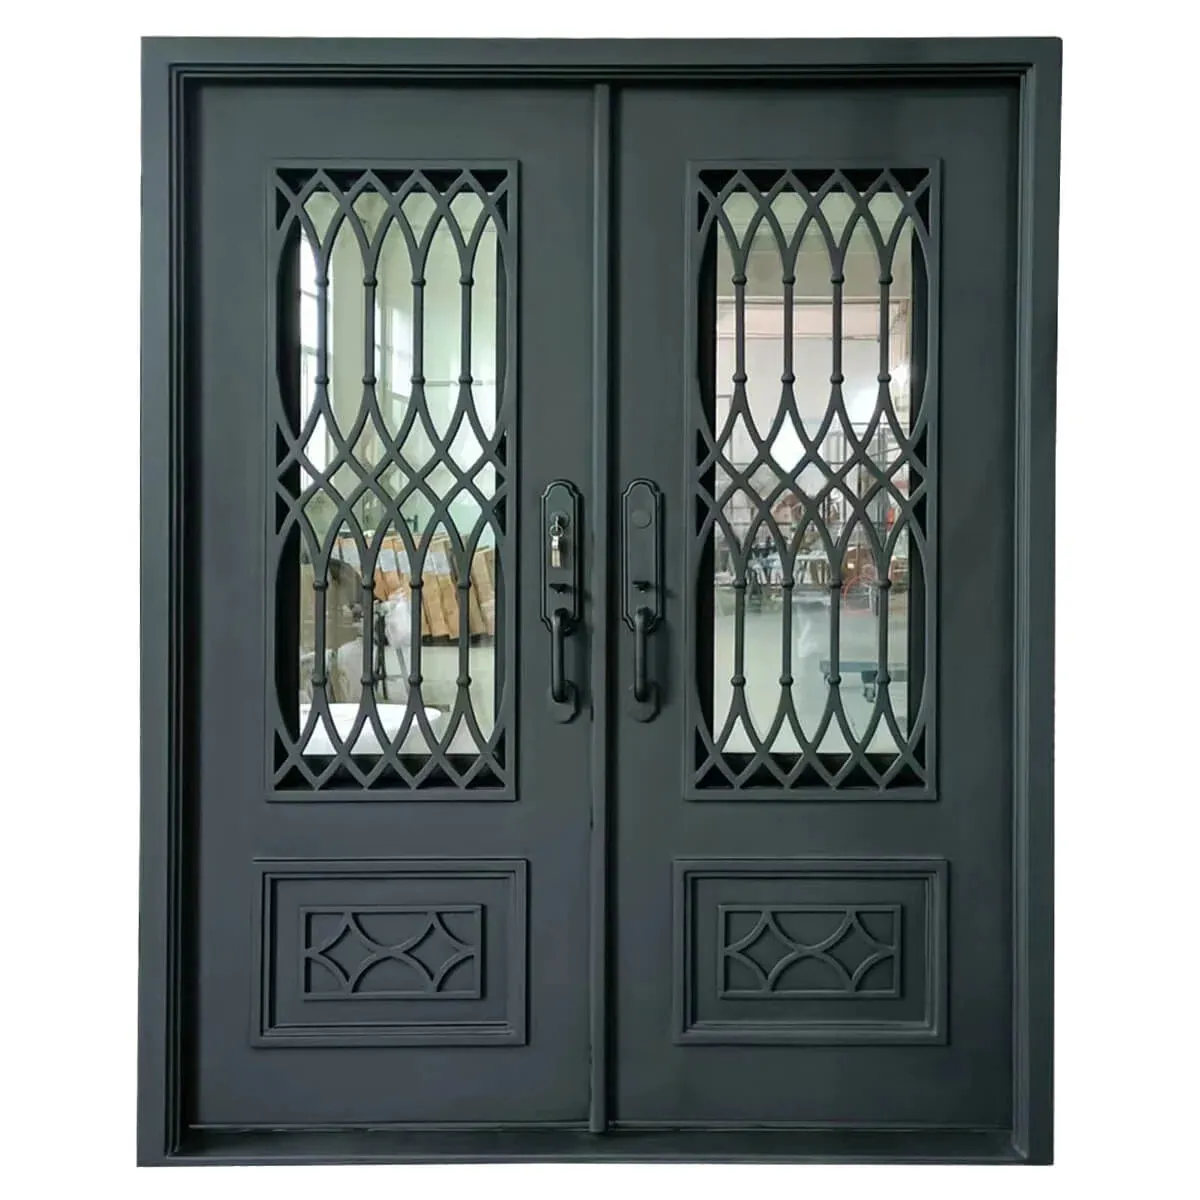 Puertas de hierro forjado principal de doble frente exterior de diseño exquisito